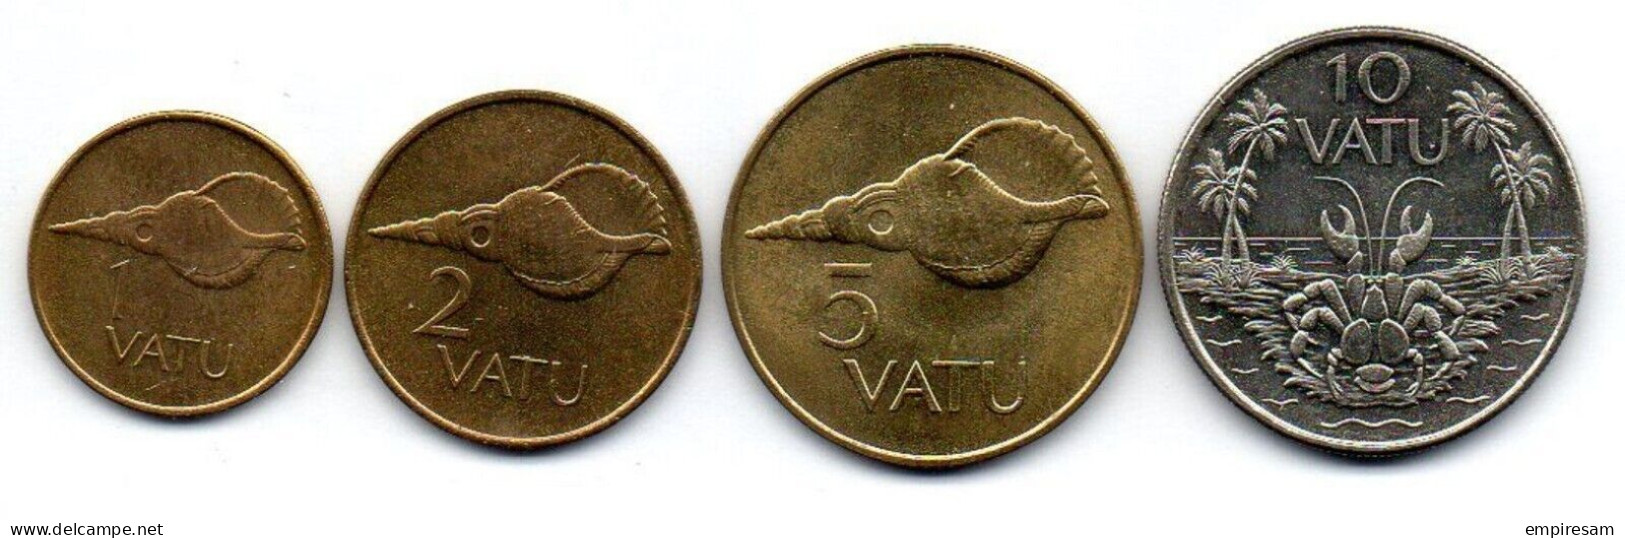 VANUATU-Setof 4coins 1, 2, 5, 10 Vatu- Ni-Brass, Cu-Ni- 1990-1999, KM #3 - 6 - Vanuatu